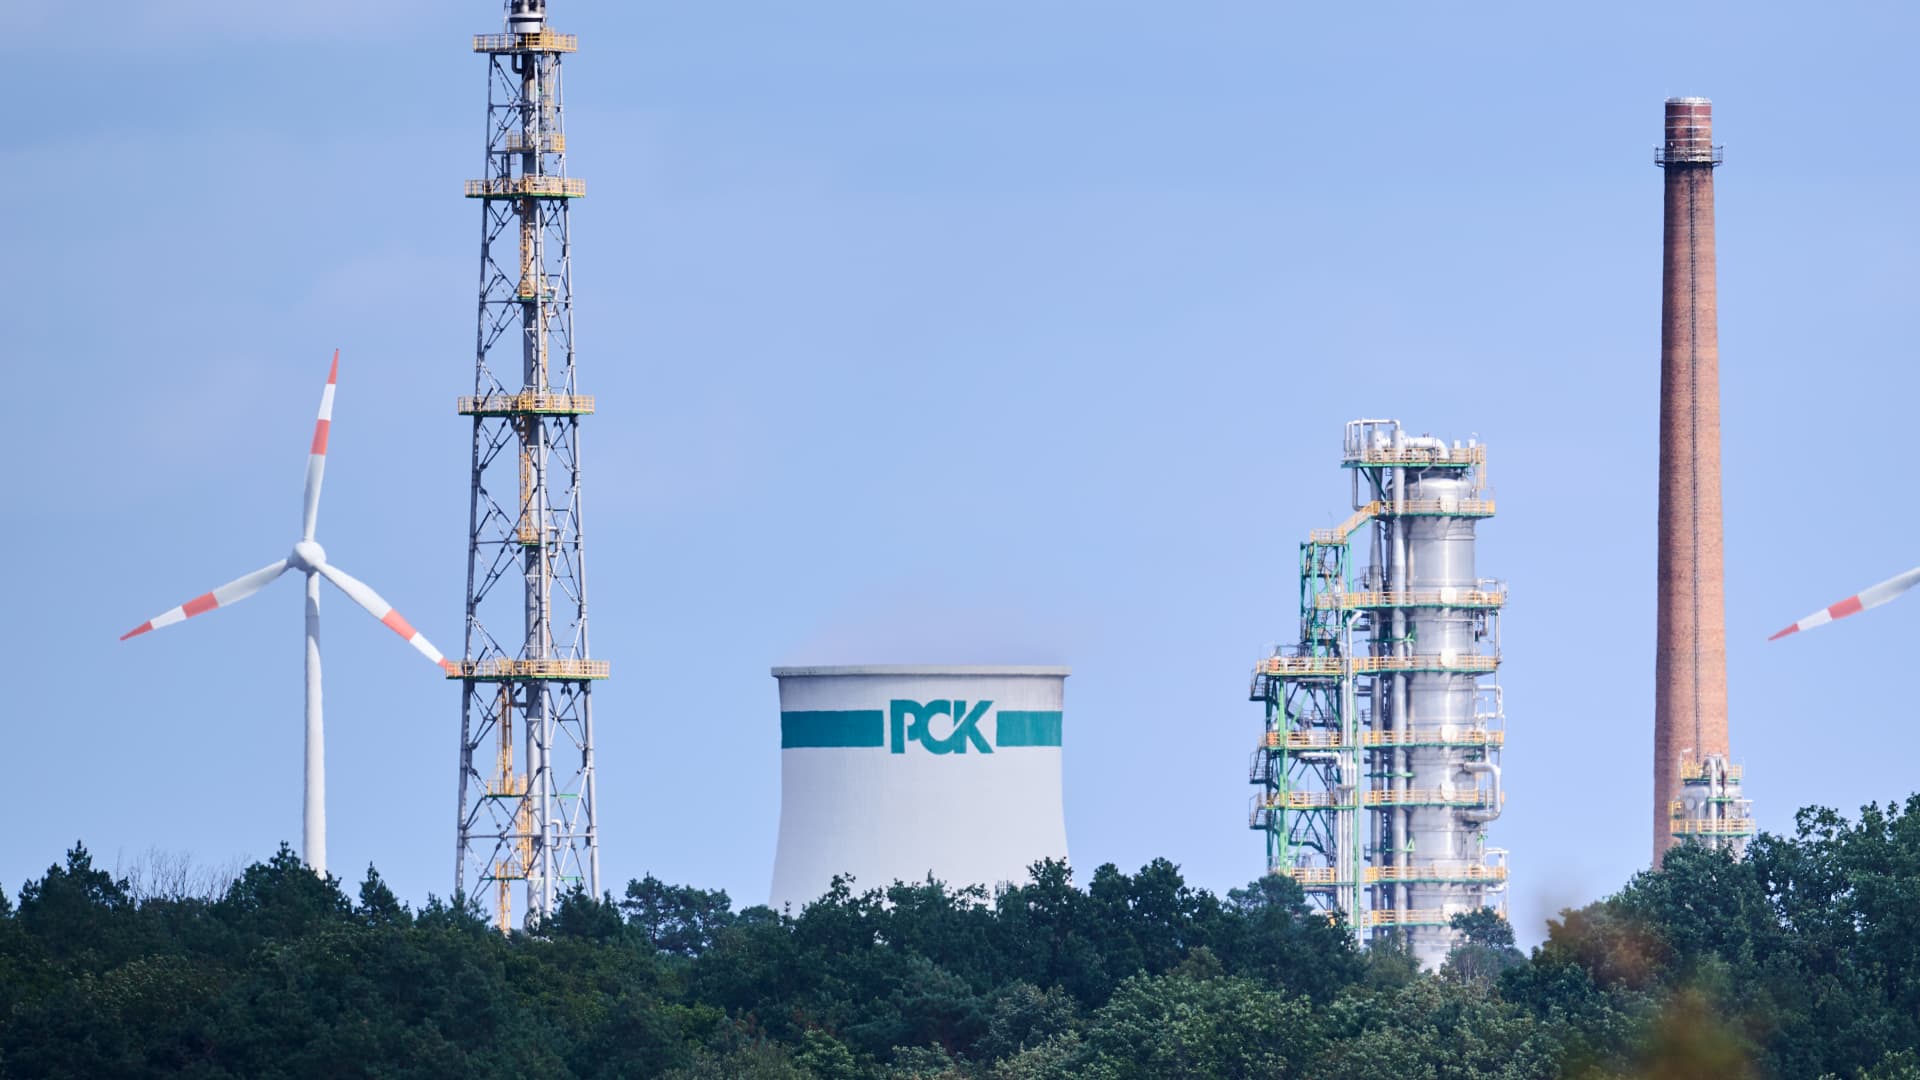 Polska firma chce starych udziałów Rosnieftu w rafinerii PCK Schwedt: Reuters